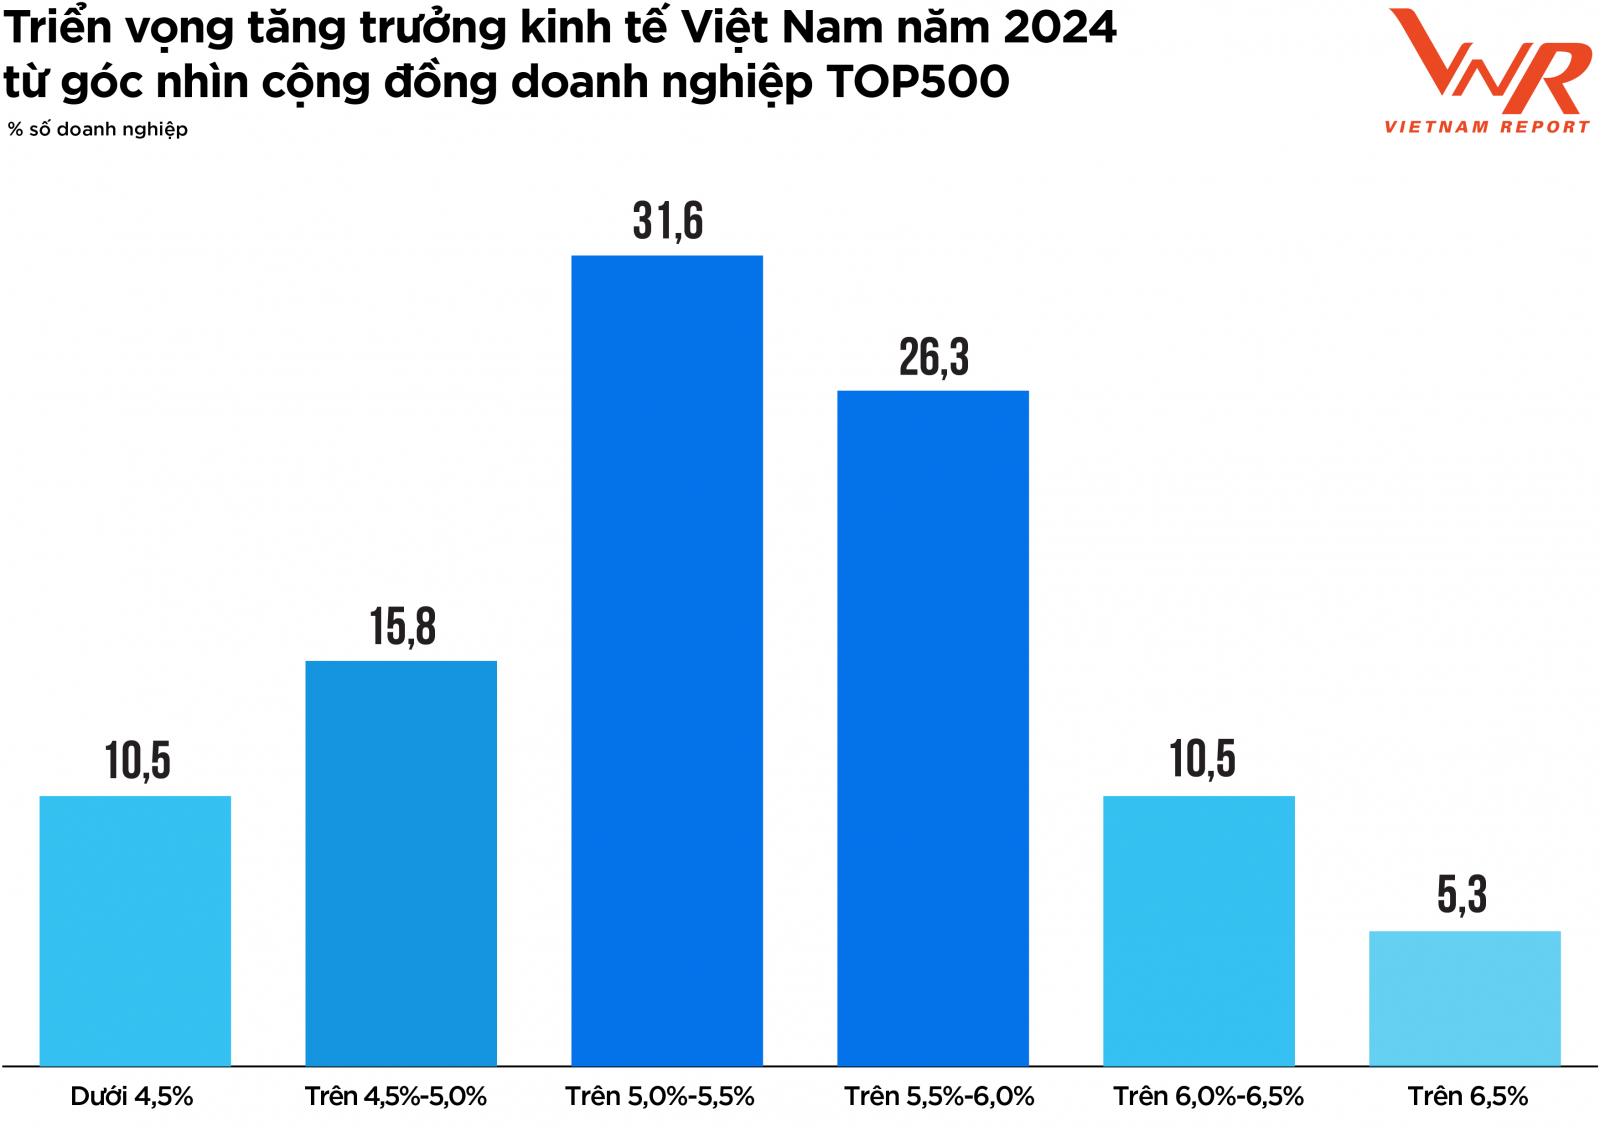 Triển vọng tăng trưởng kinh tế Việt Nam năm 2024 từ góc nhìn cộng đồng doanh nghiệp TOP500